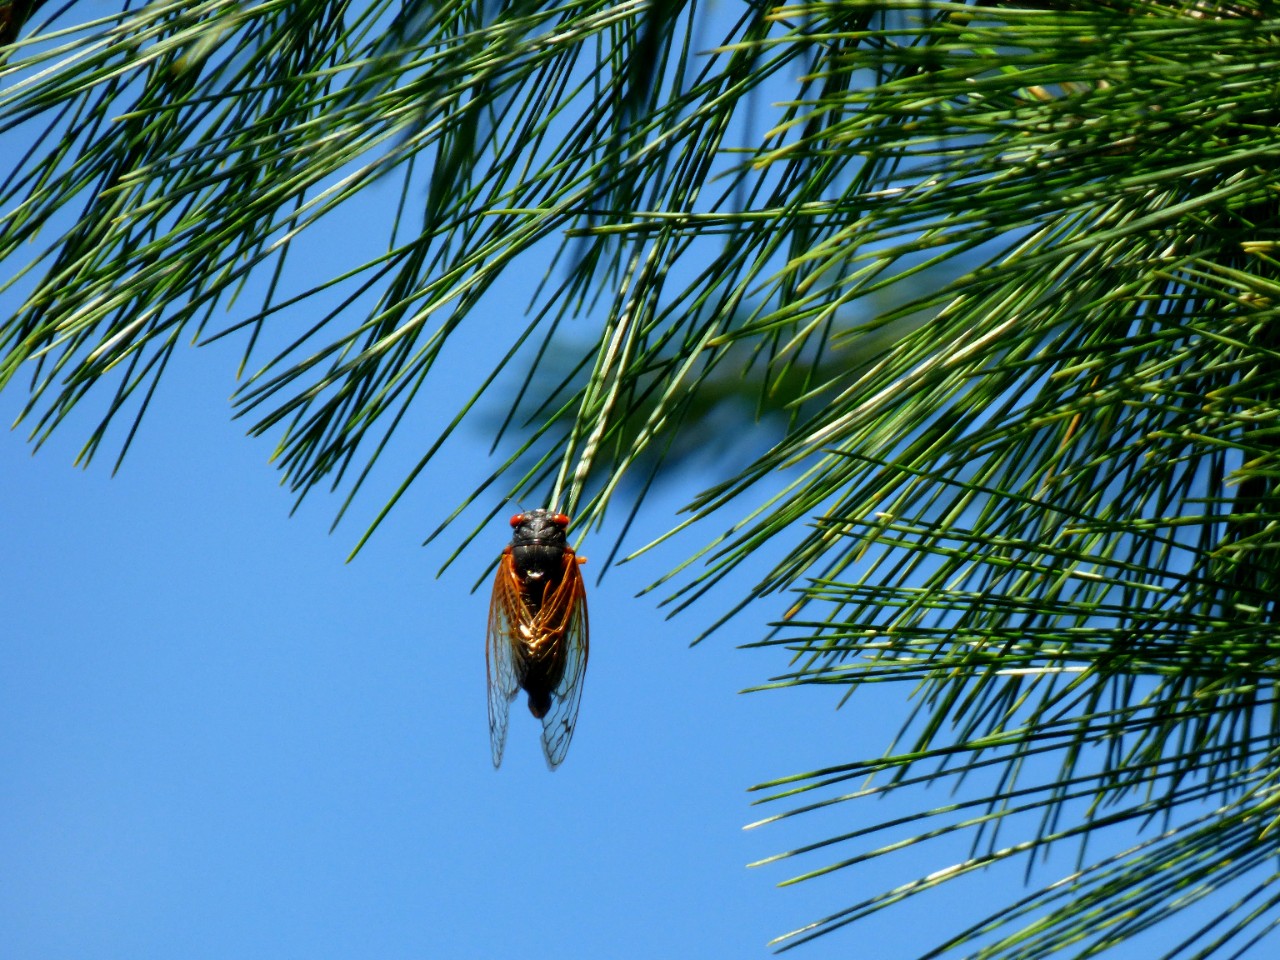 A cicada dangles from a fir bough.